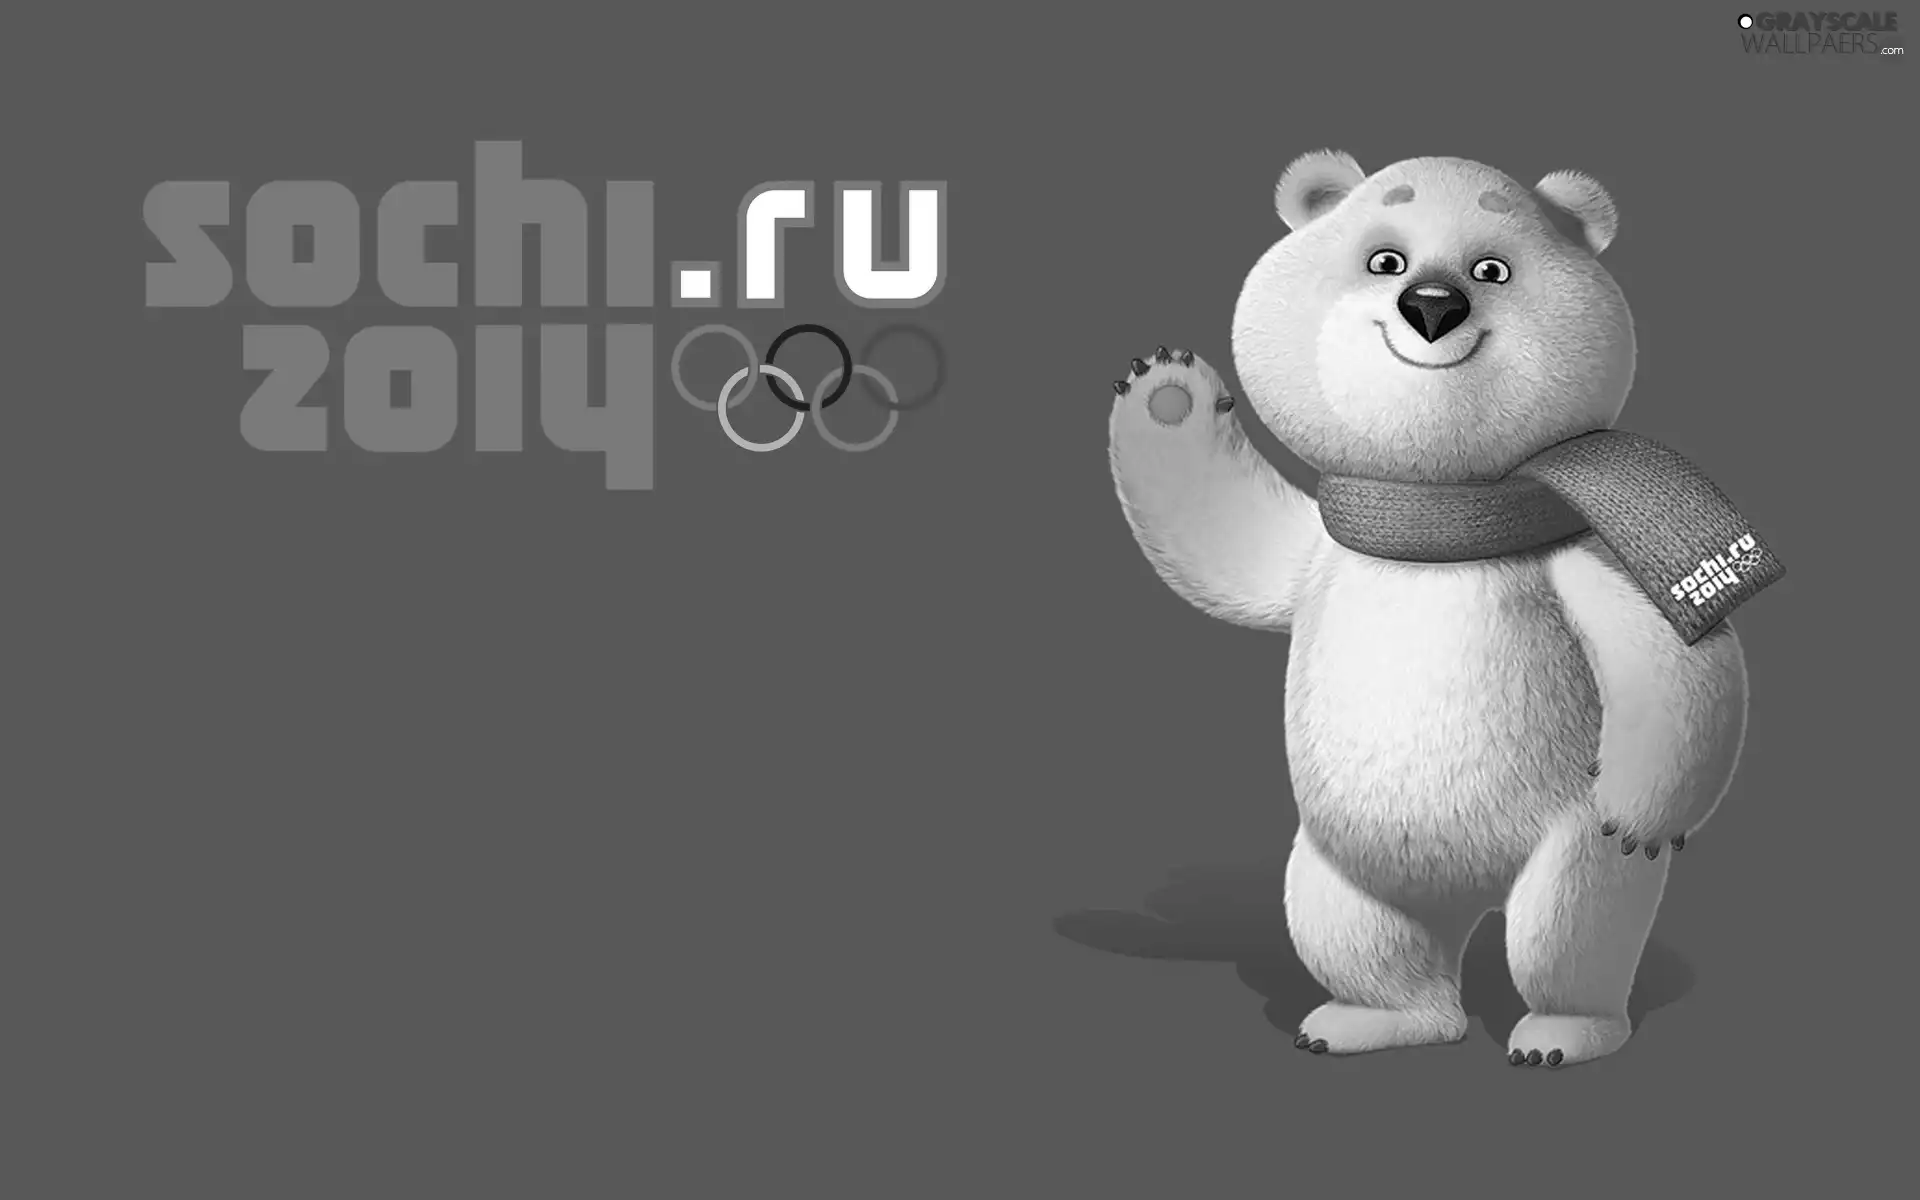 Scarf, Sochi 2014, teddy bear